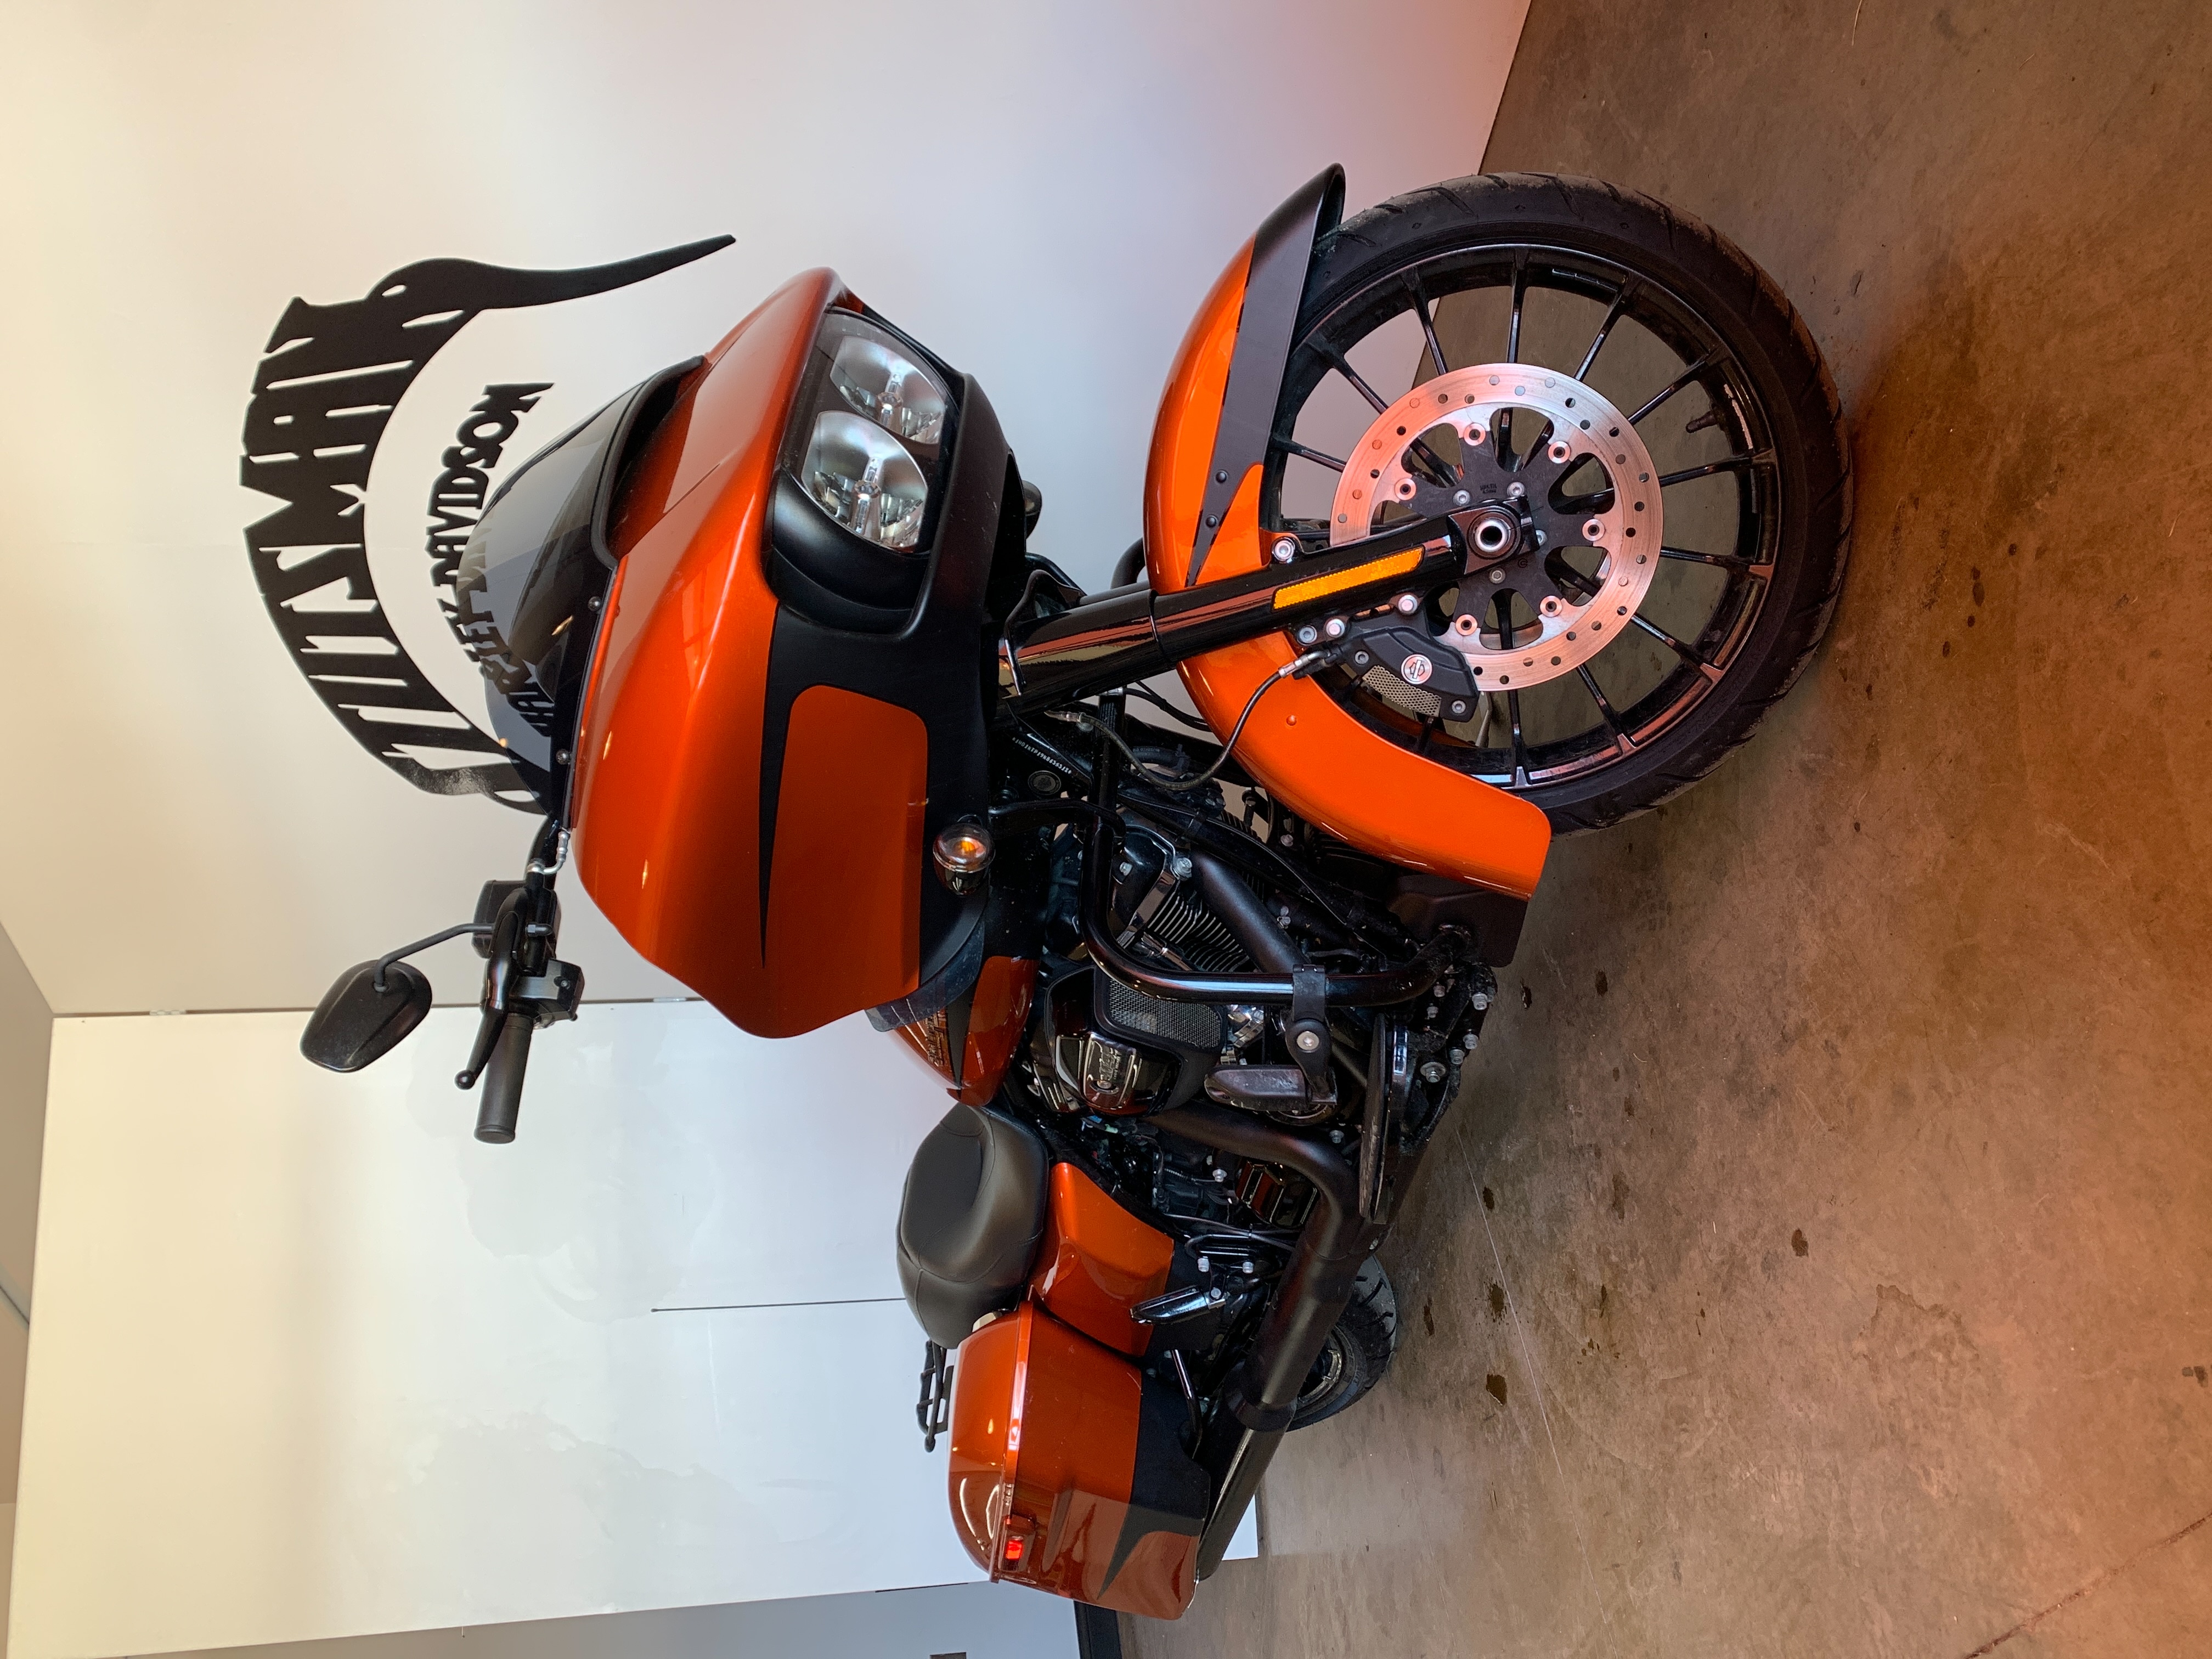 2019 Harley-Davidson Road Glide Special at Stutsman Harley-Davidson